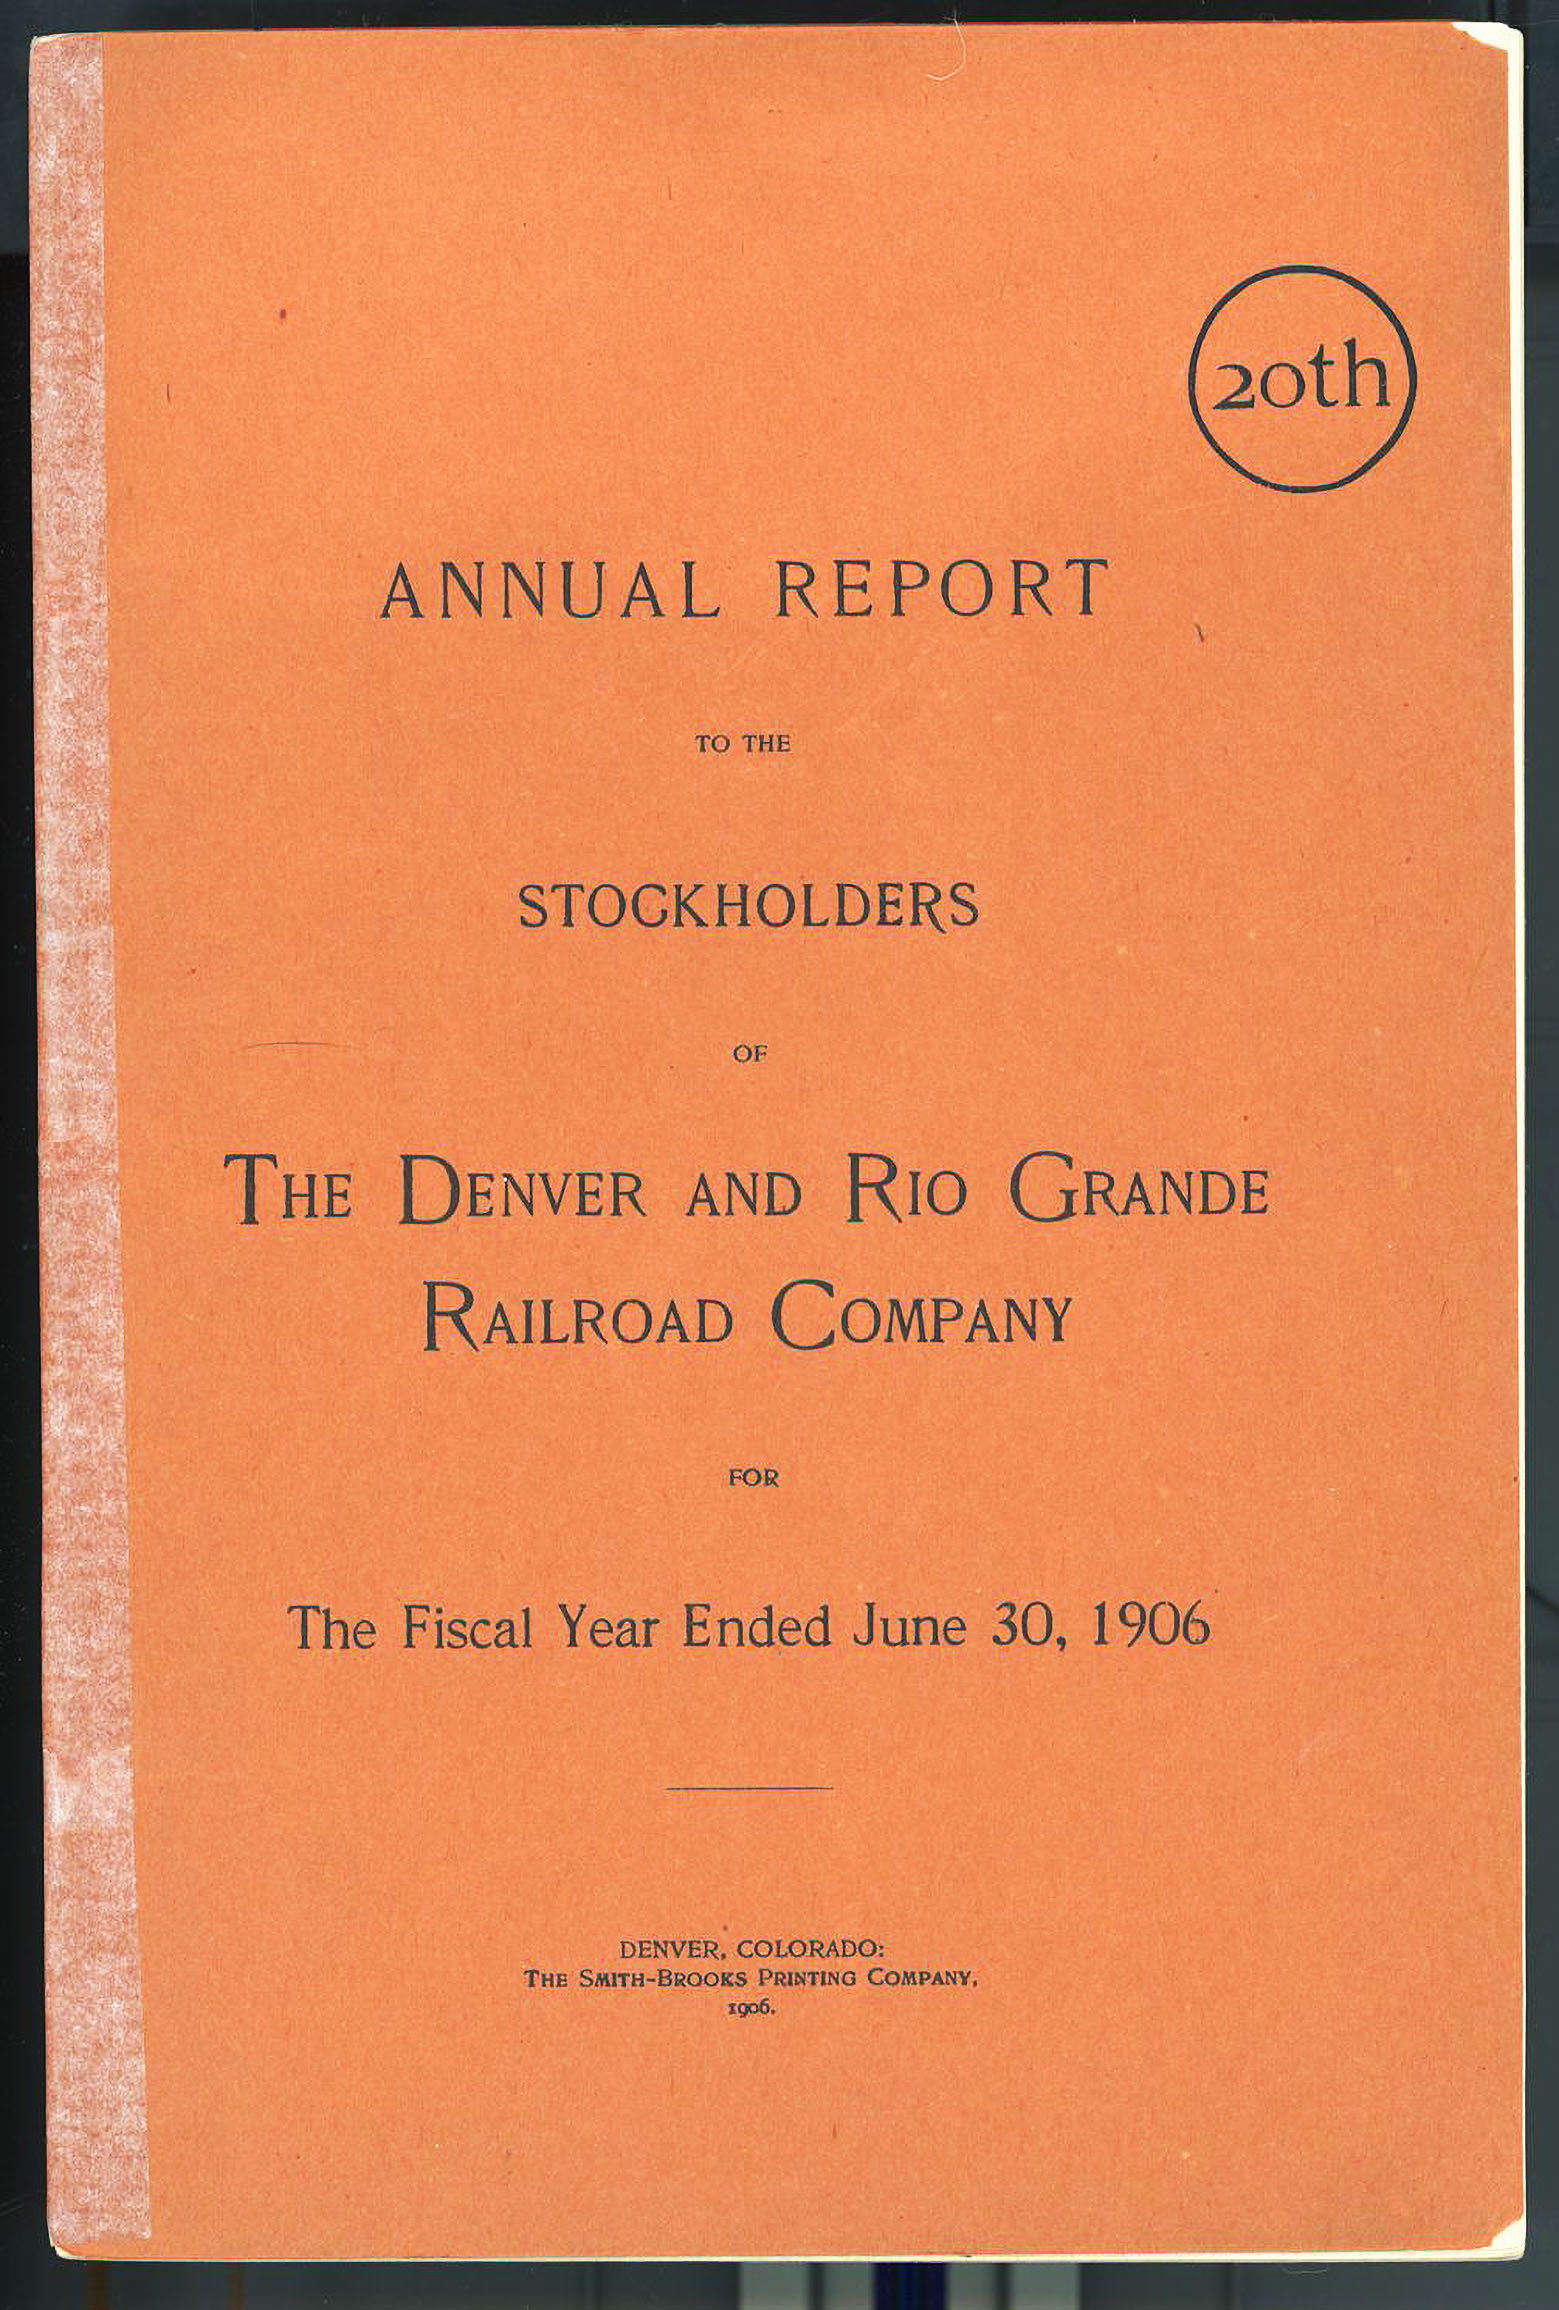 DENVER & RIO GRANDE RAILROAD Twentieth Annual Report with folding map 1906